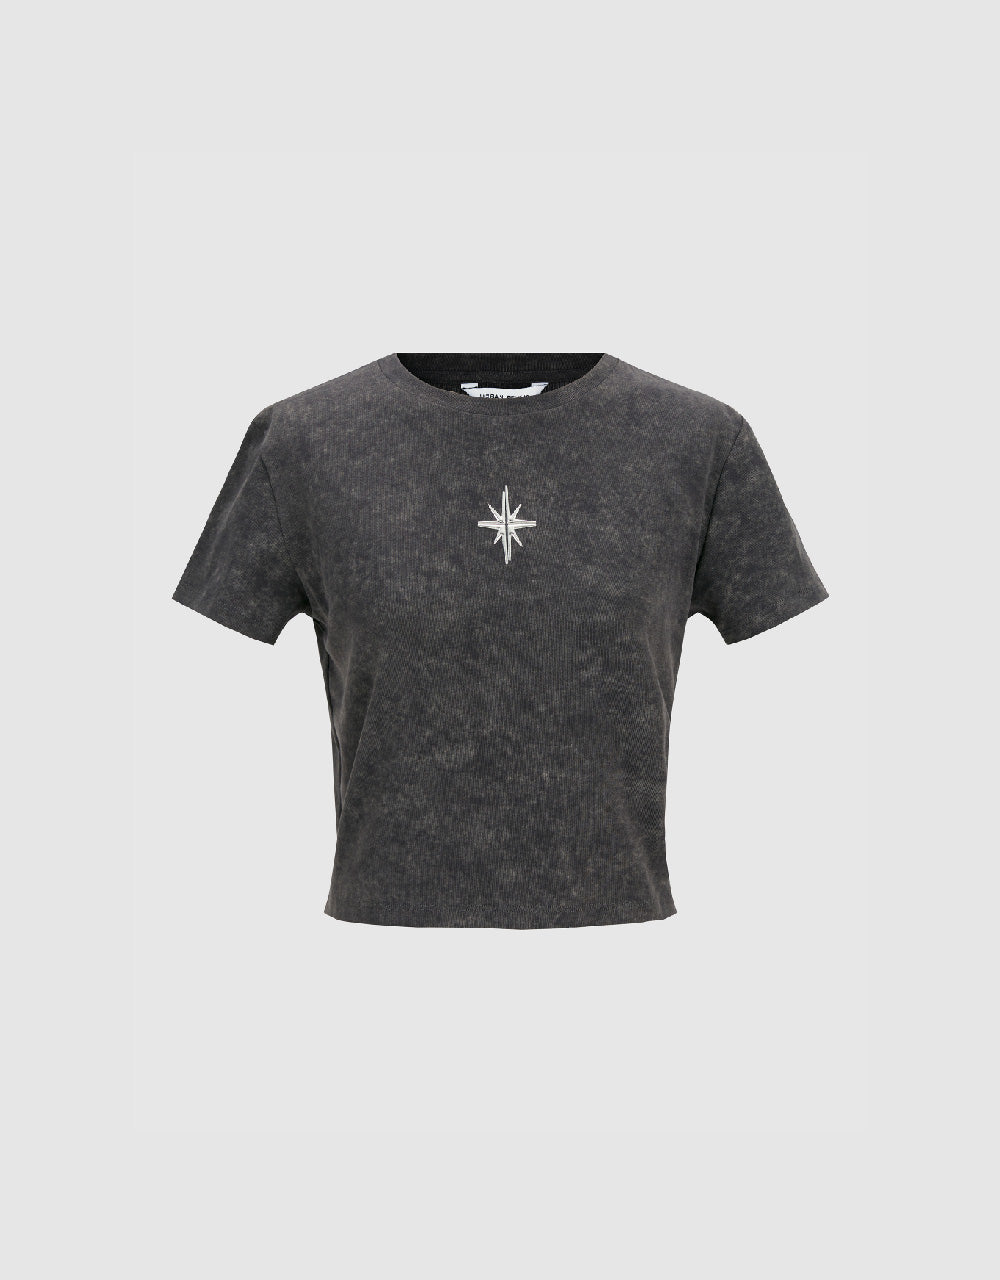 Hexagram Printed Crew Neck Skinny T-Shirt